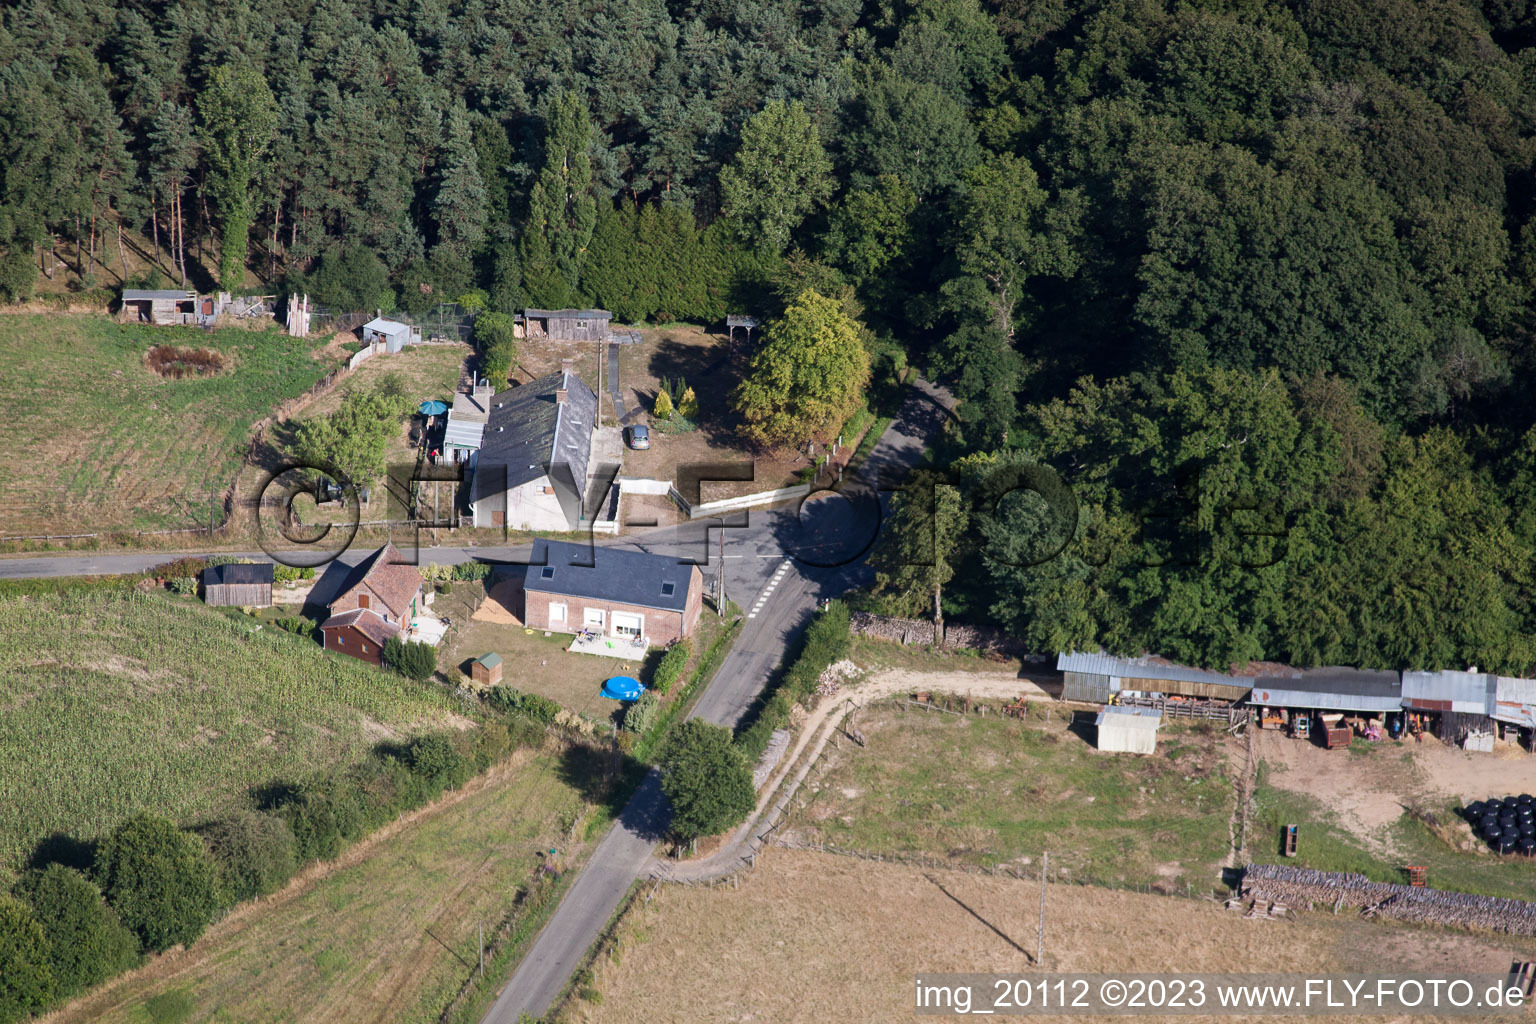 Semur-en-Vallon im Bundesland Sarthe, Frankreich von der Drohne aus gesehen